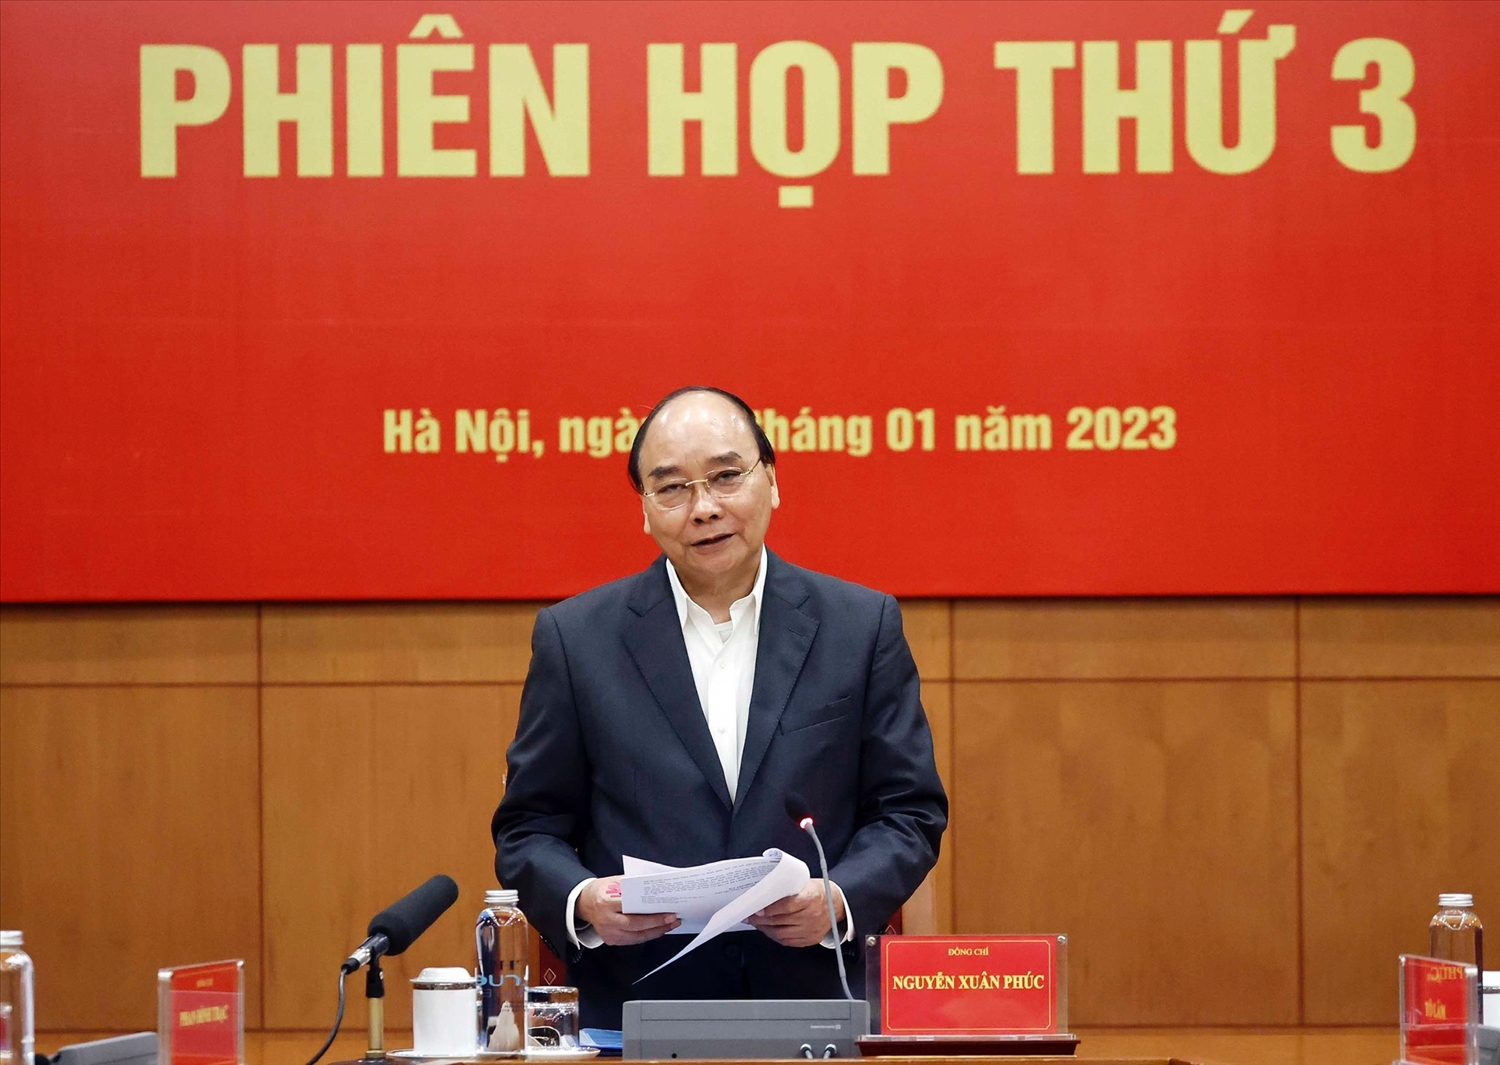 Chủ tịch nước Nguyễn Xuân Phúc phát biểu tại Phiên họp thứ 3 - Ảnh: VGP/LS